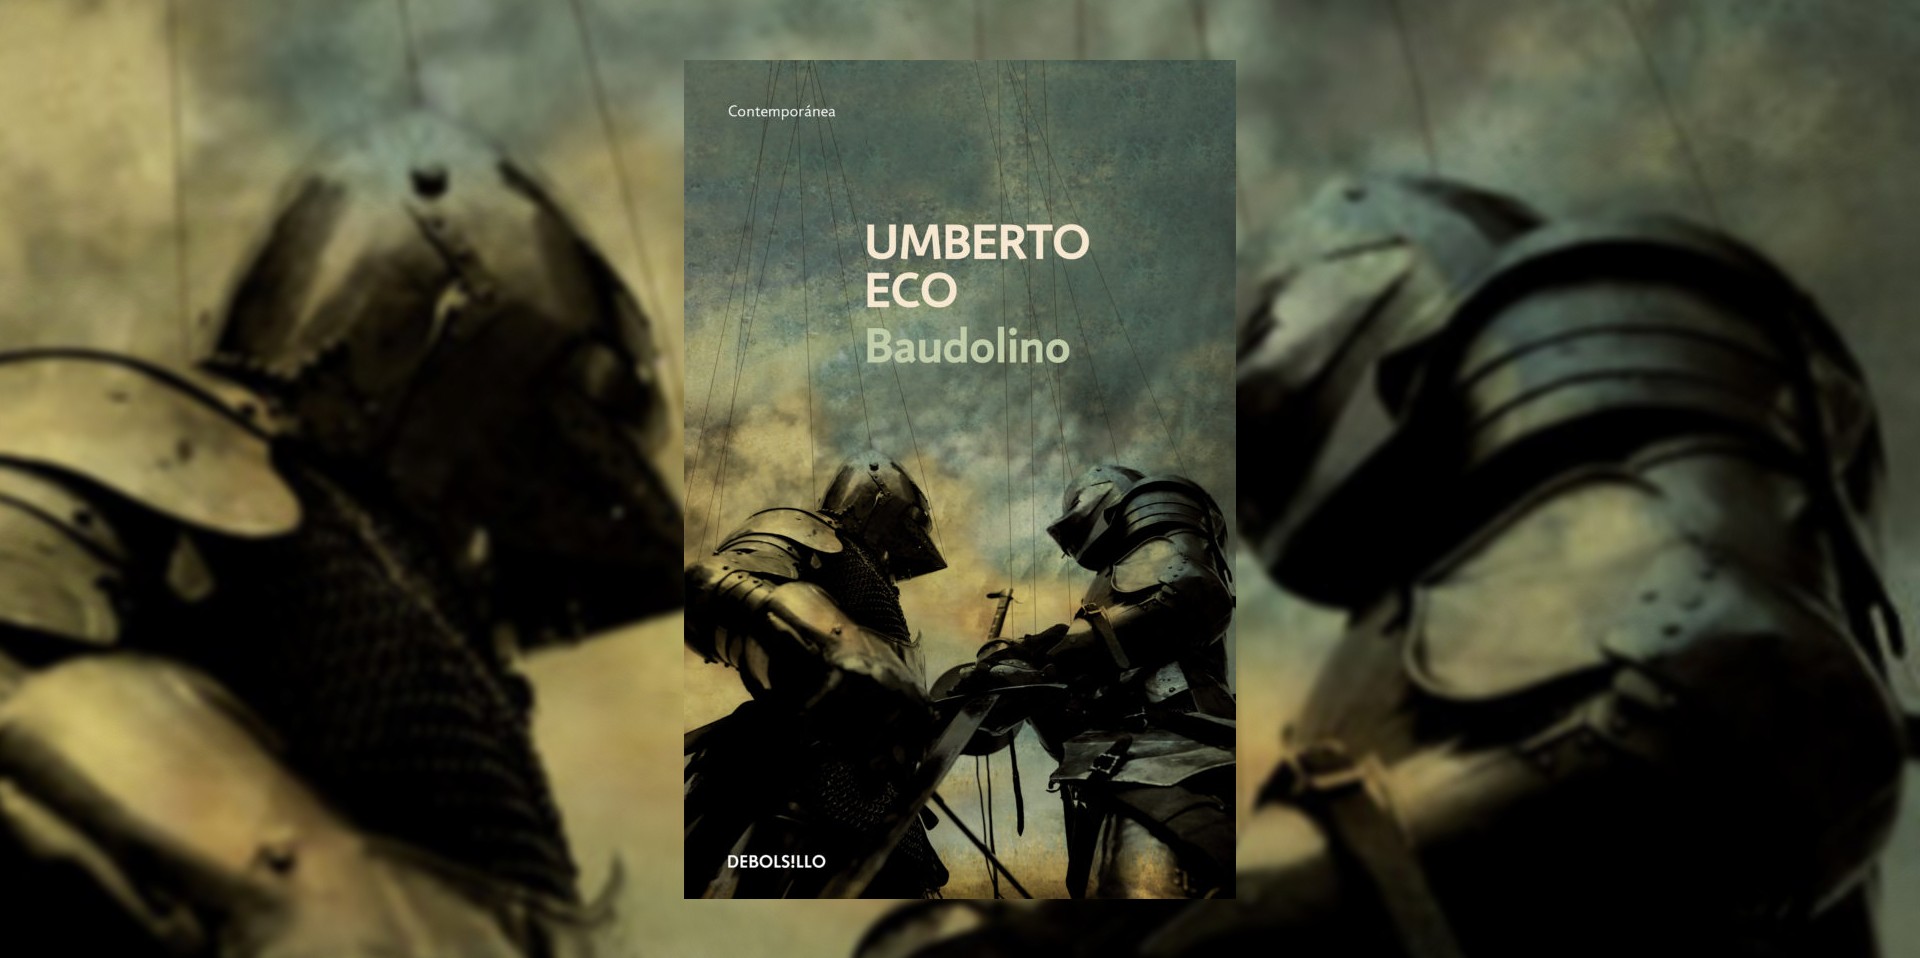 Portada del libro "Baudolino", de Umberto Eco. (Penguin Random House).